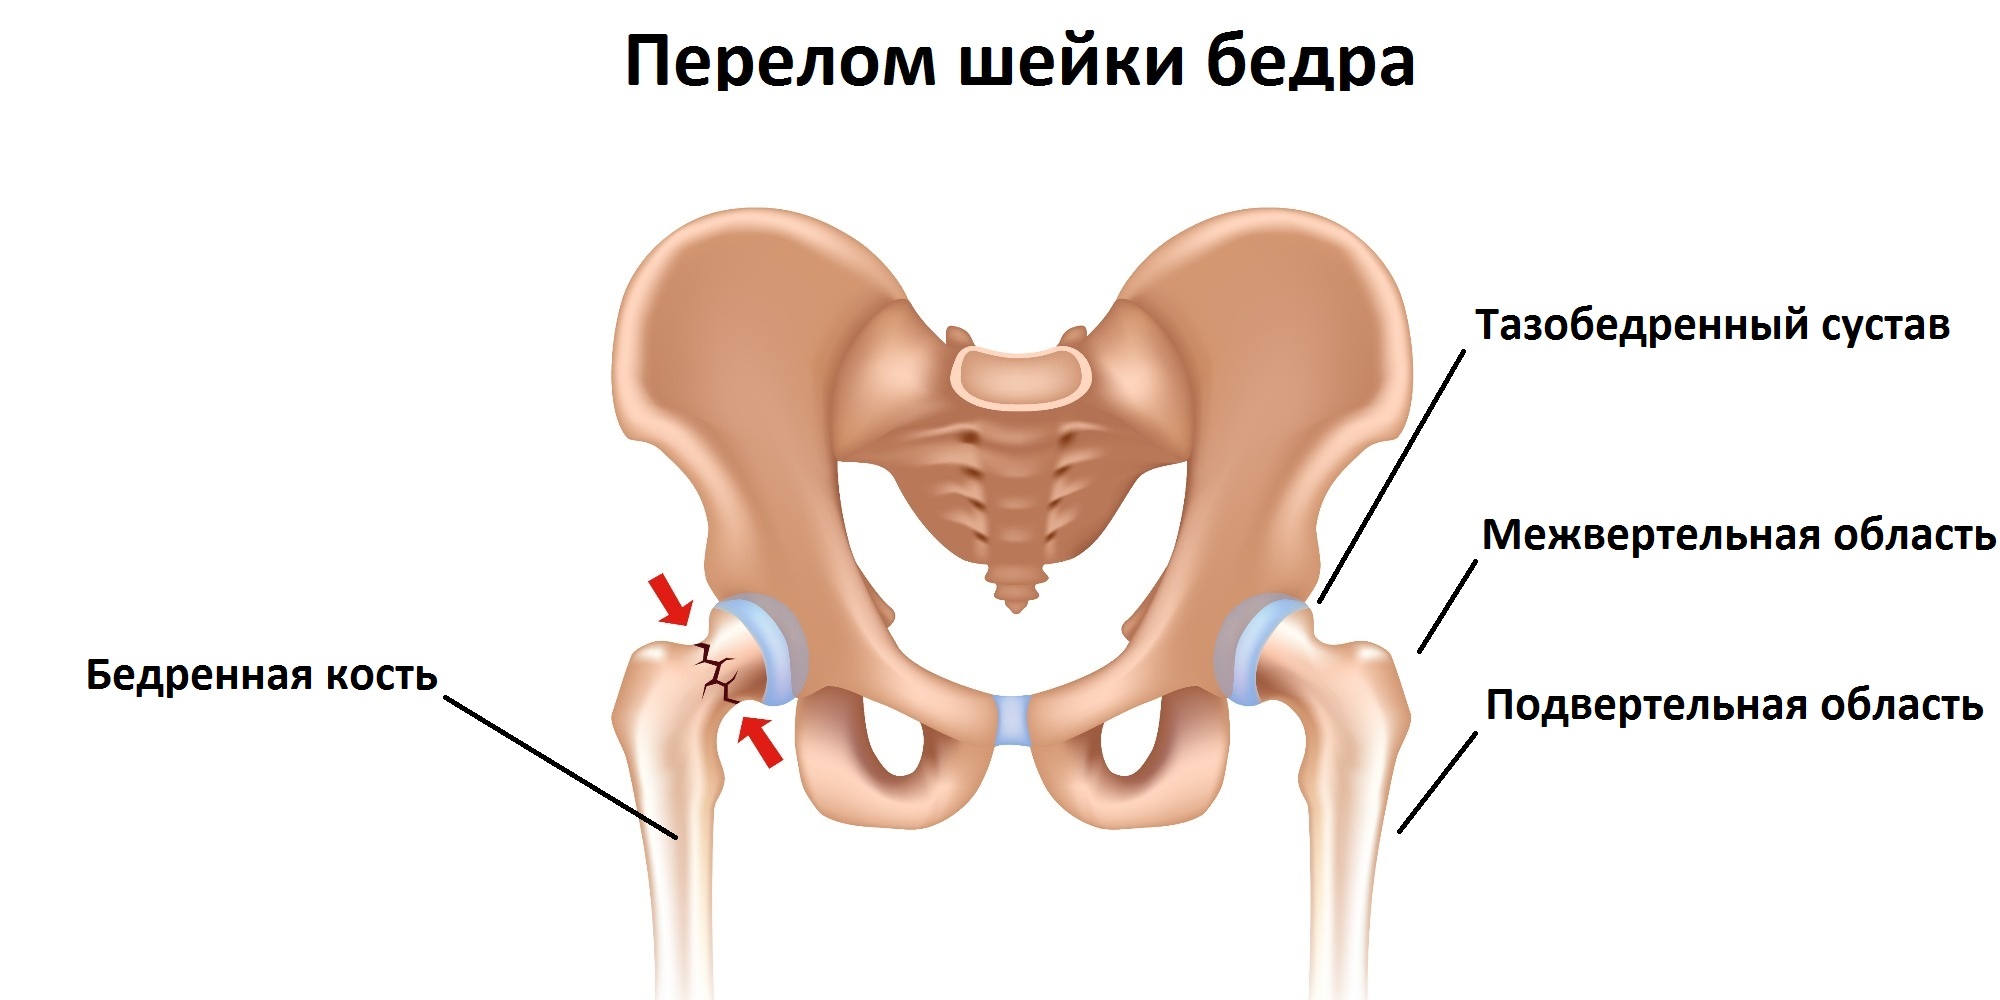 Тазобедренный сустав после операции отзывы пациентов. Шейка тазобедренного сустава перелом. Перелом тазобедренного сустава и кости. Шейка бедра у человека перелом. Перелом шейки тазовой кости.